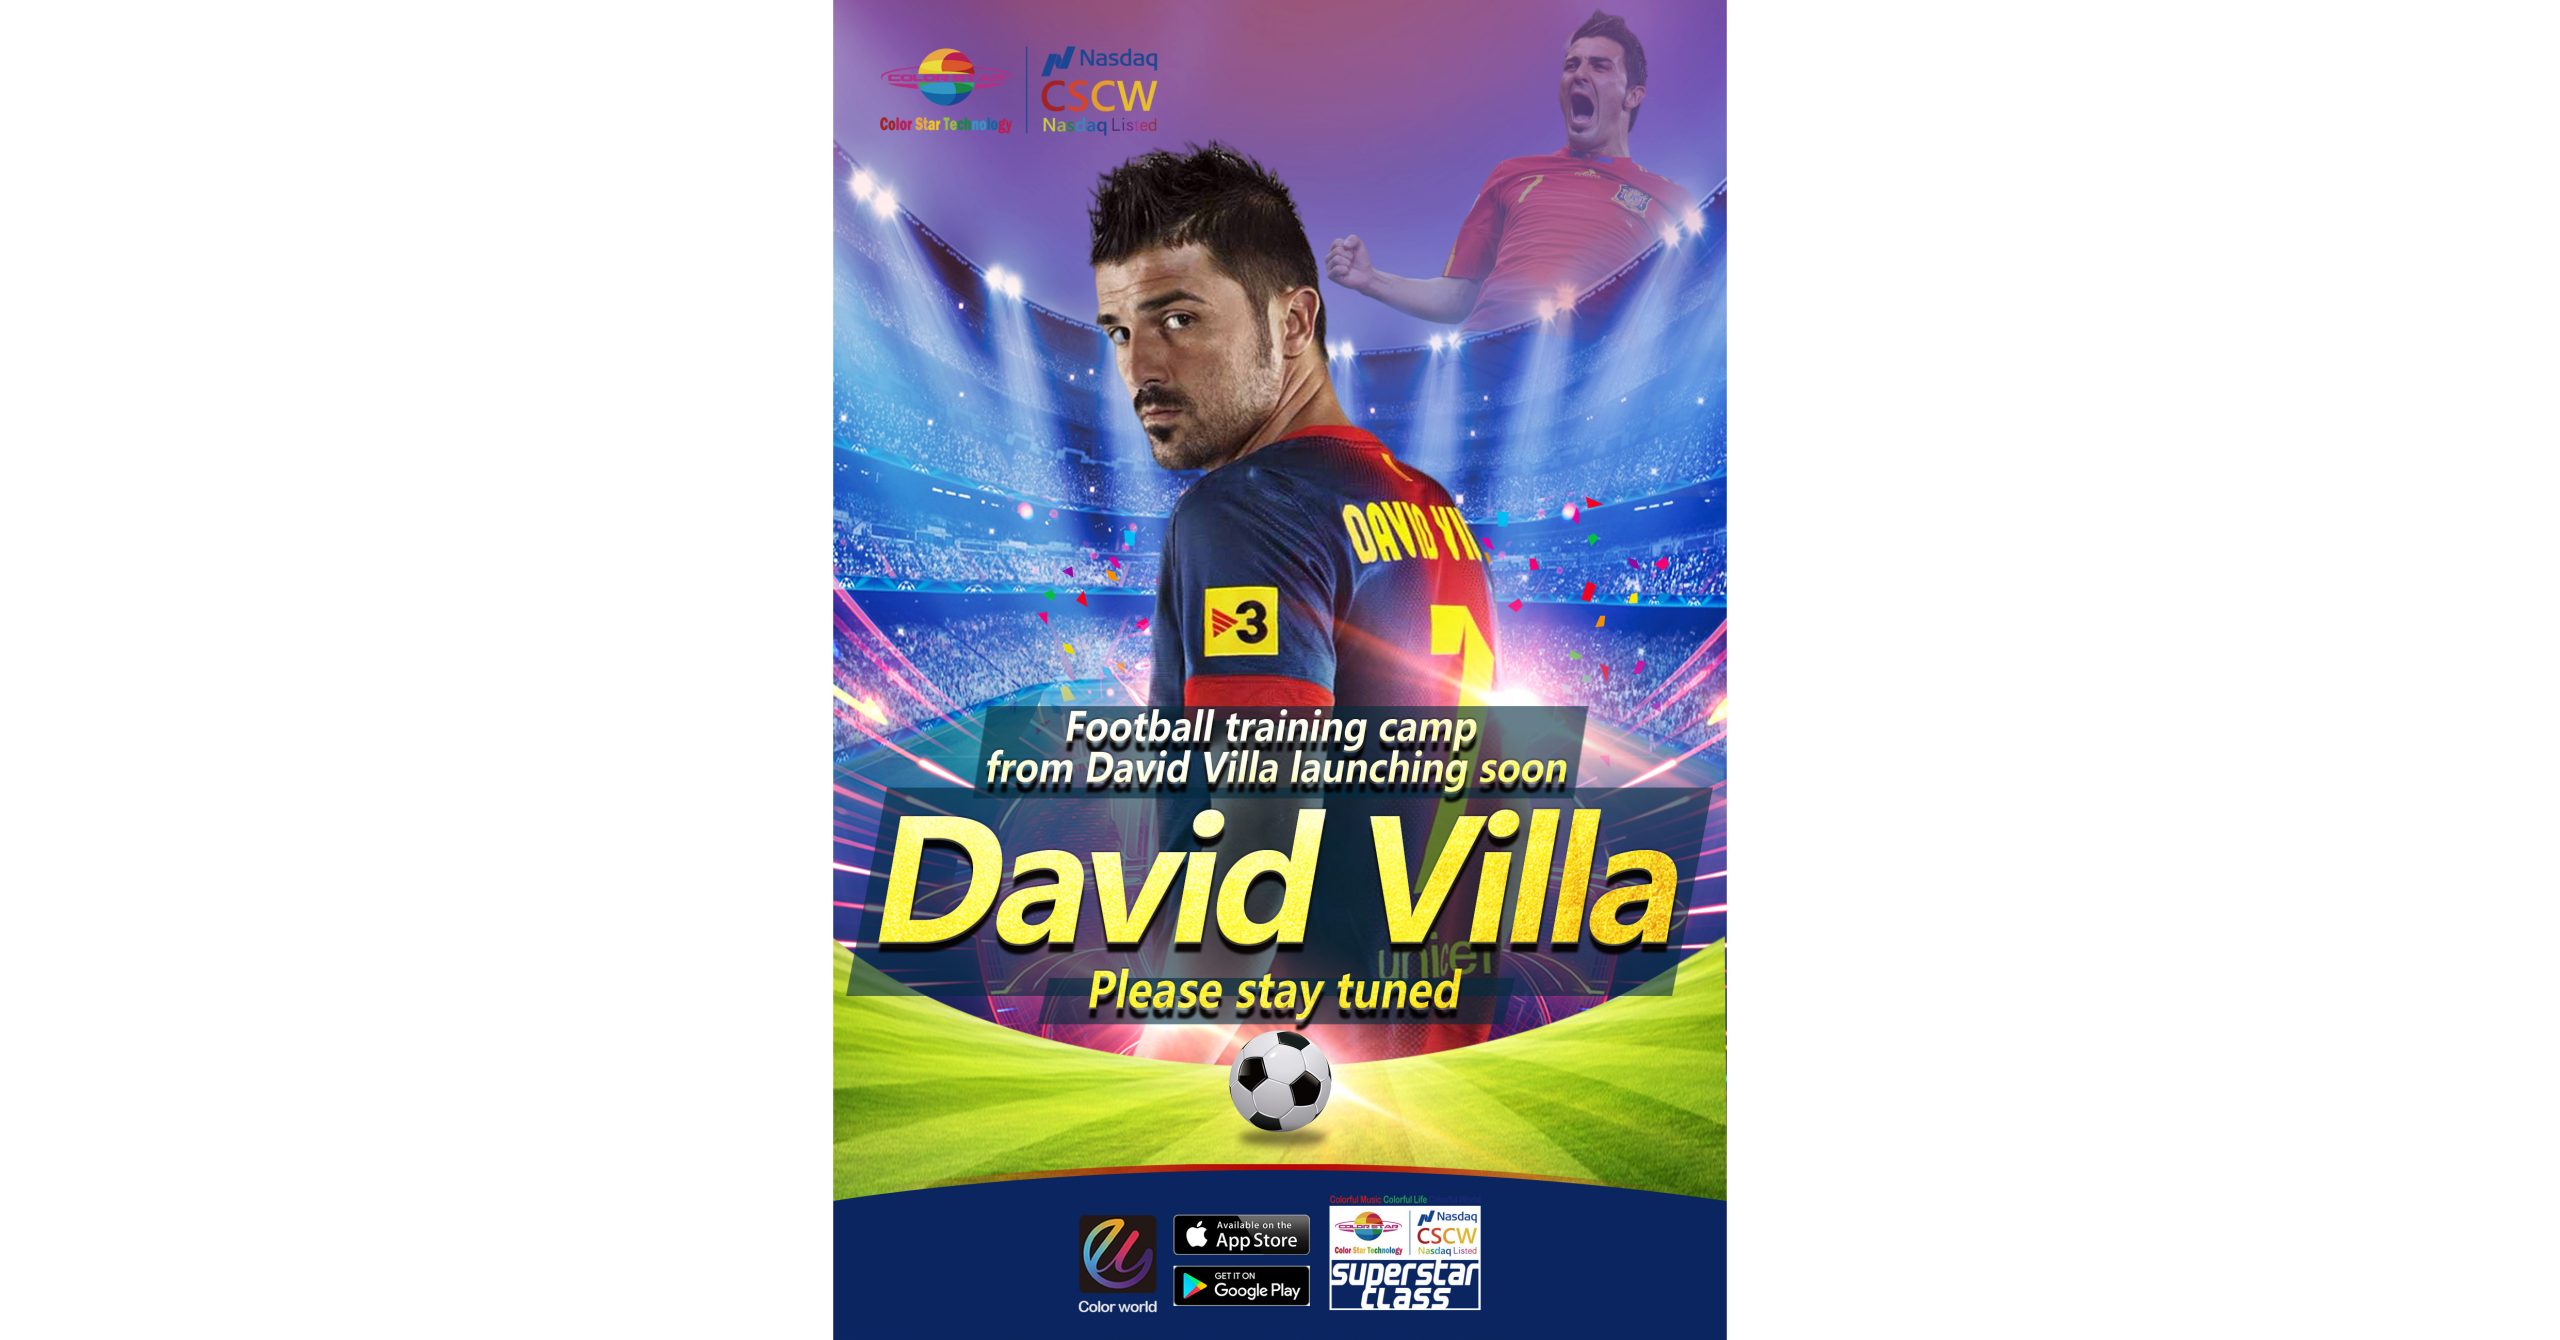 CSCW) para lanzar oficialmente el curso en línea impartido por la estrella del fútbol David Villa Sánchez el 1 de enero de 2022